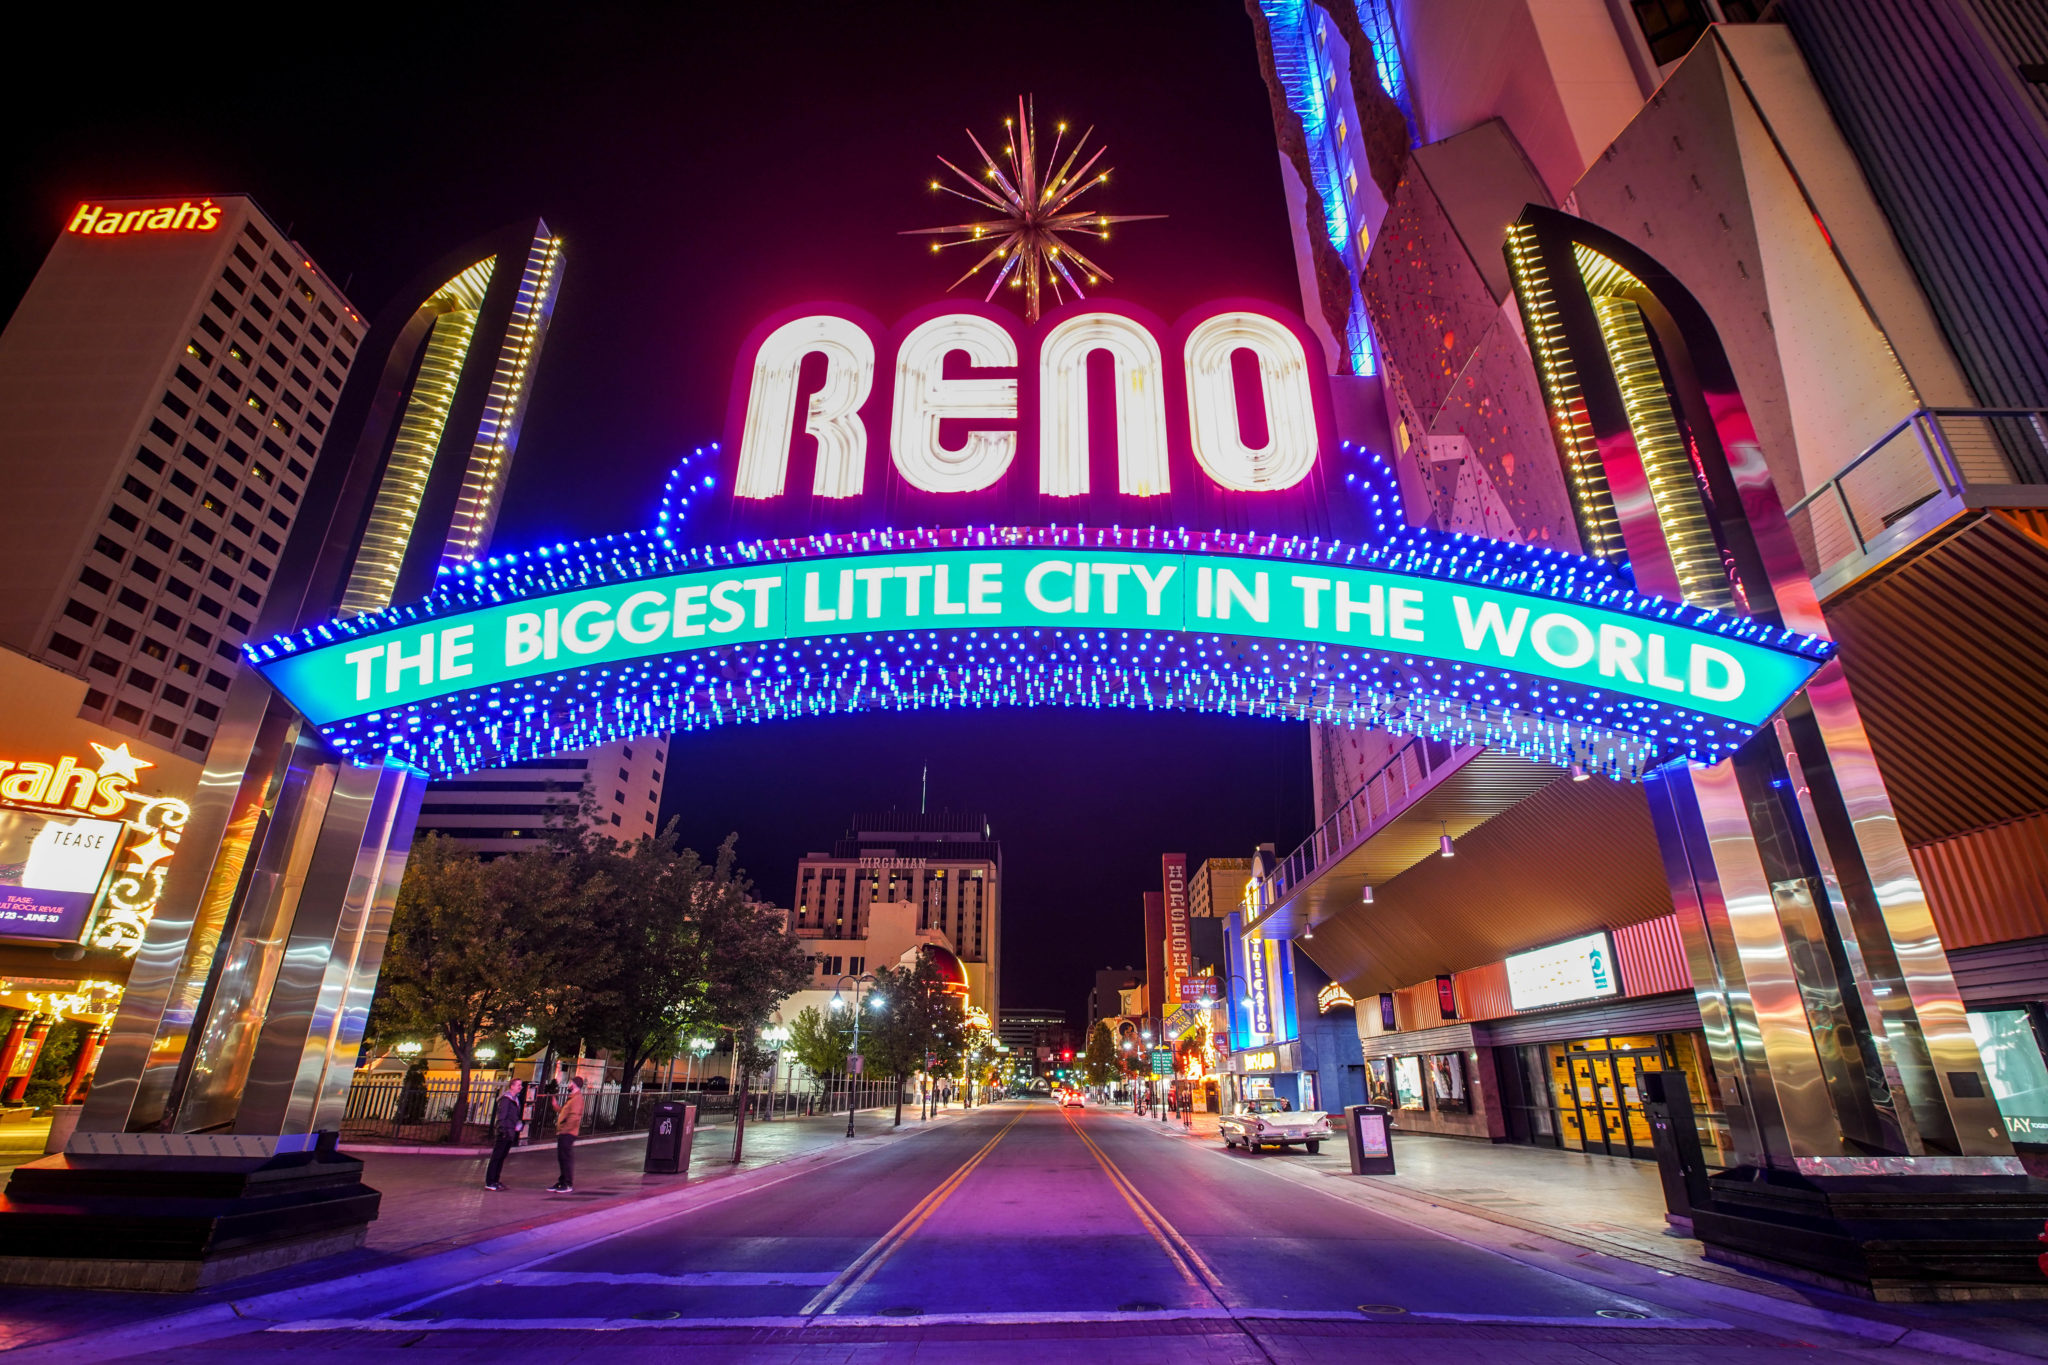 Reno sign